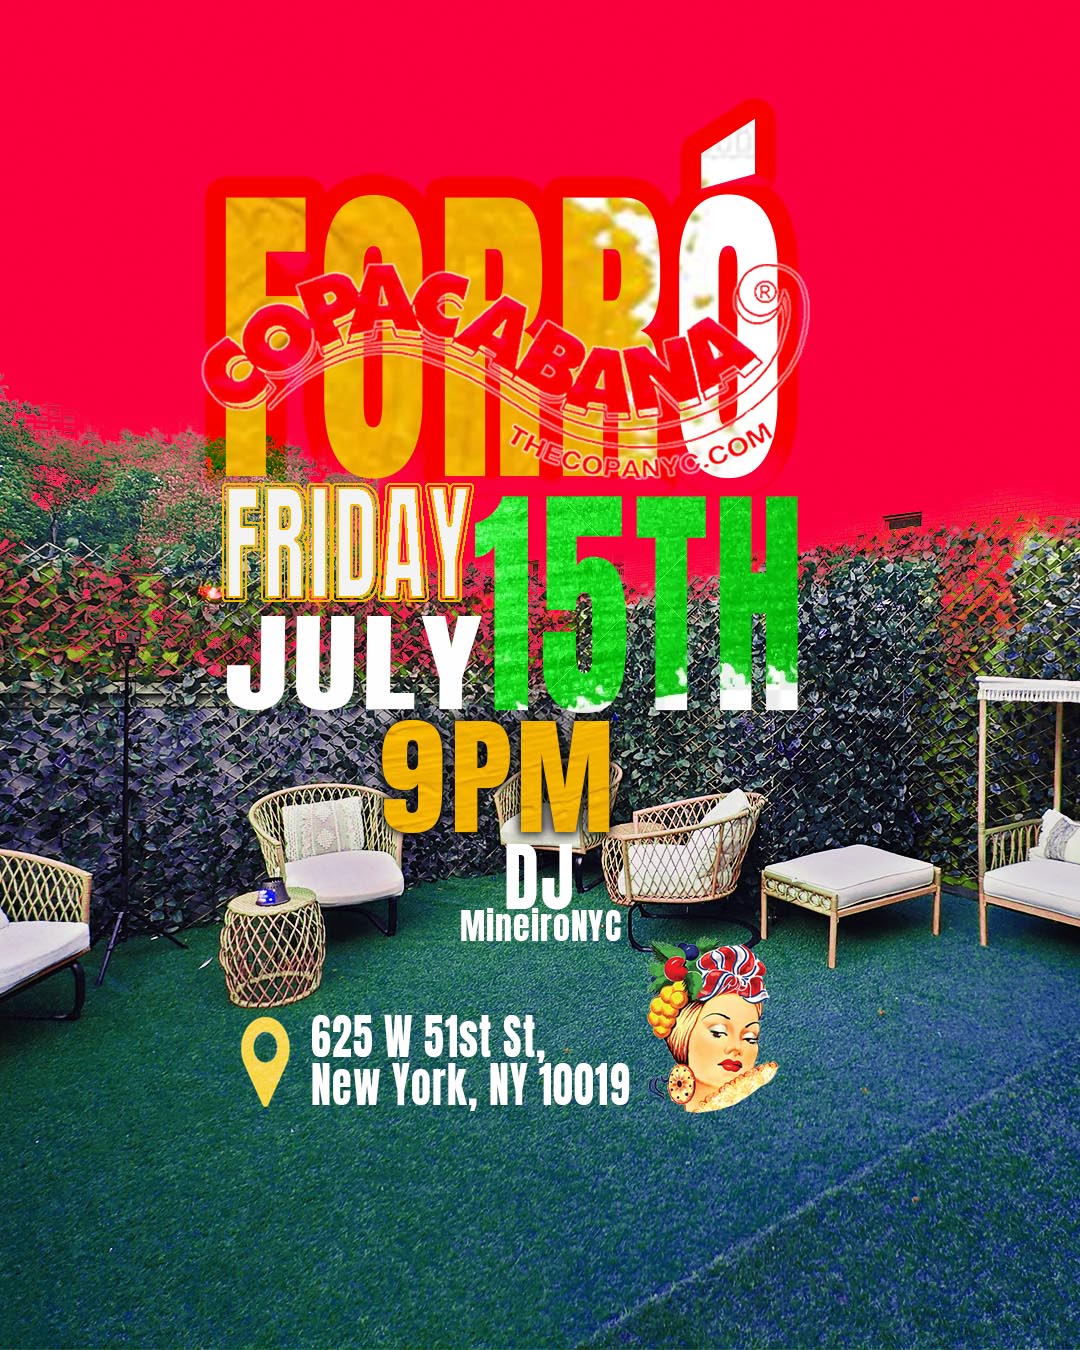 Forró Copacabana NYC, July 15 at 9pm